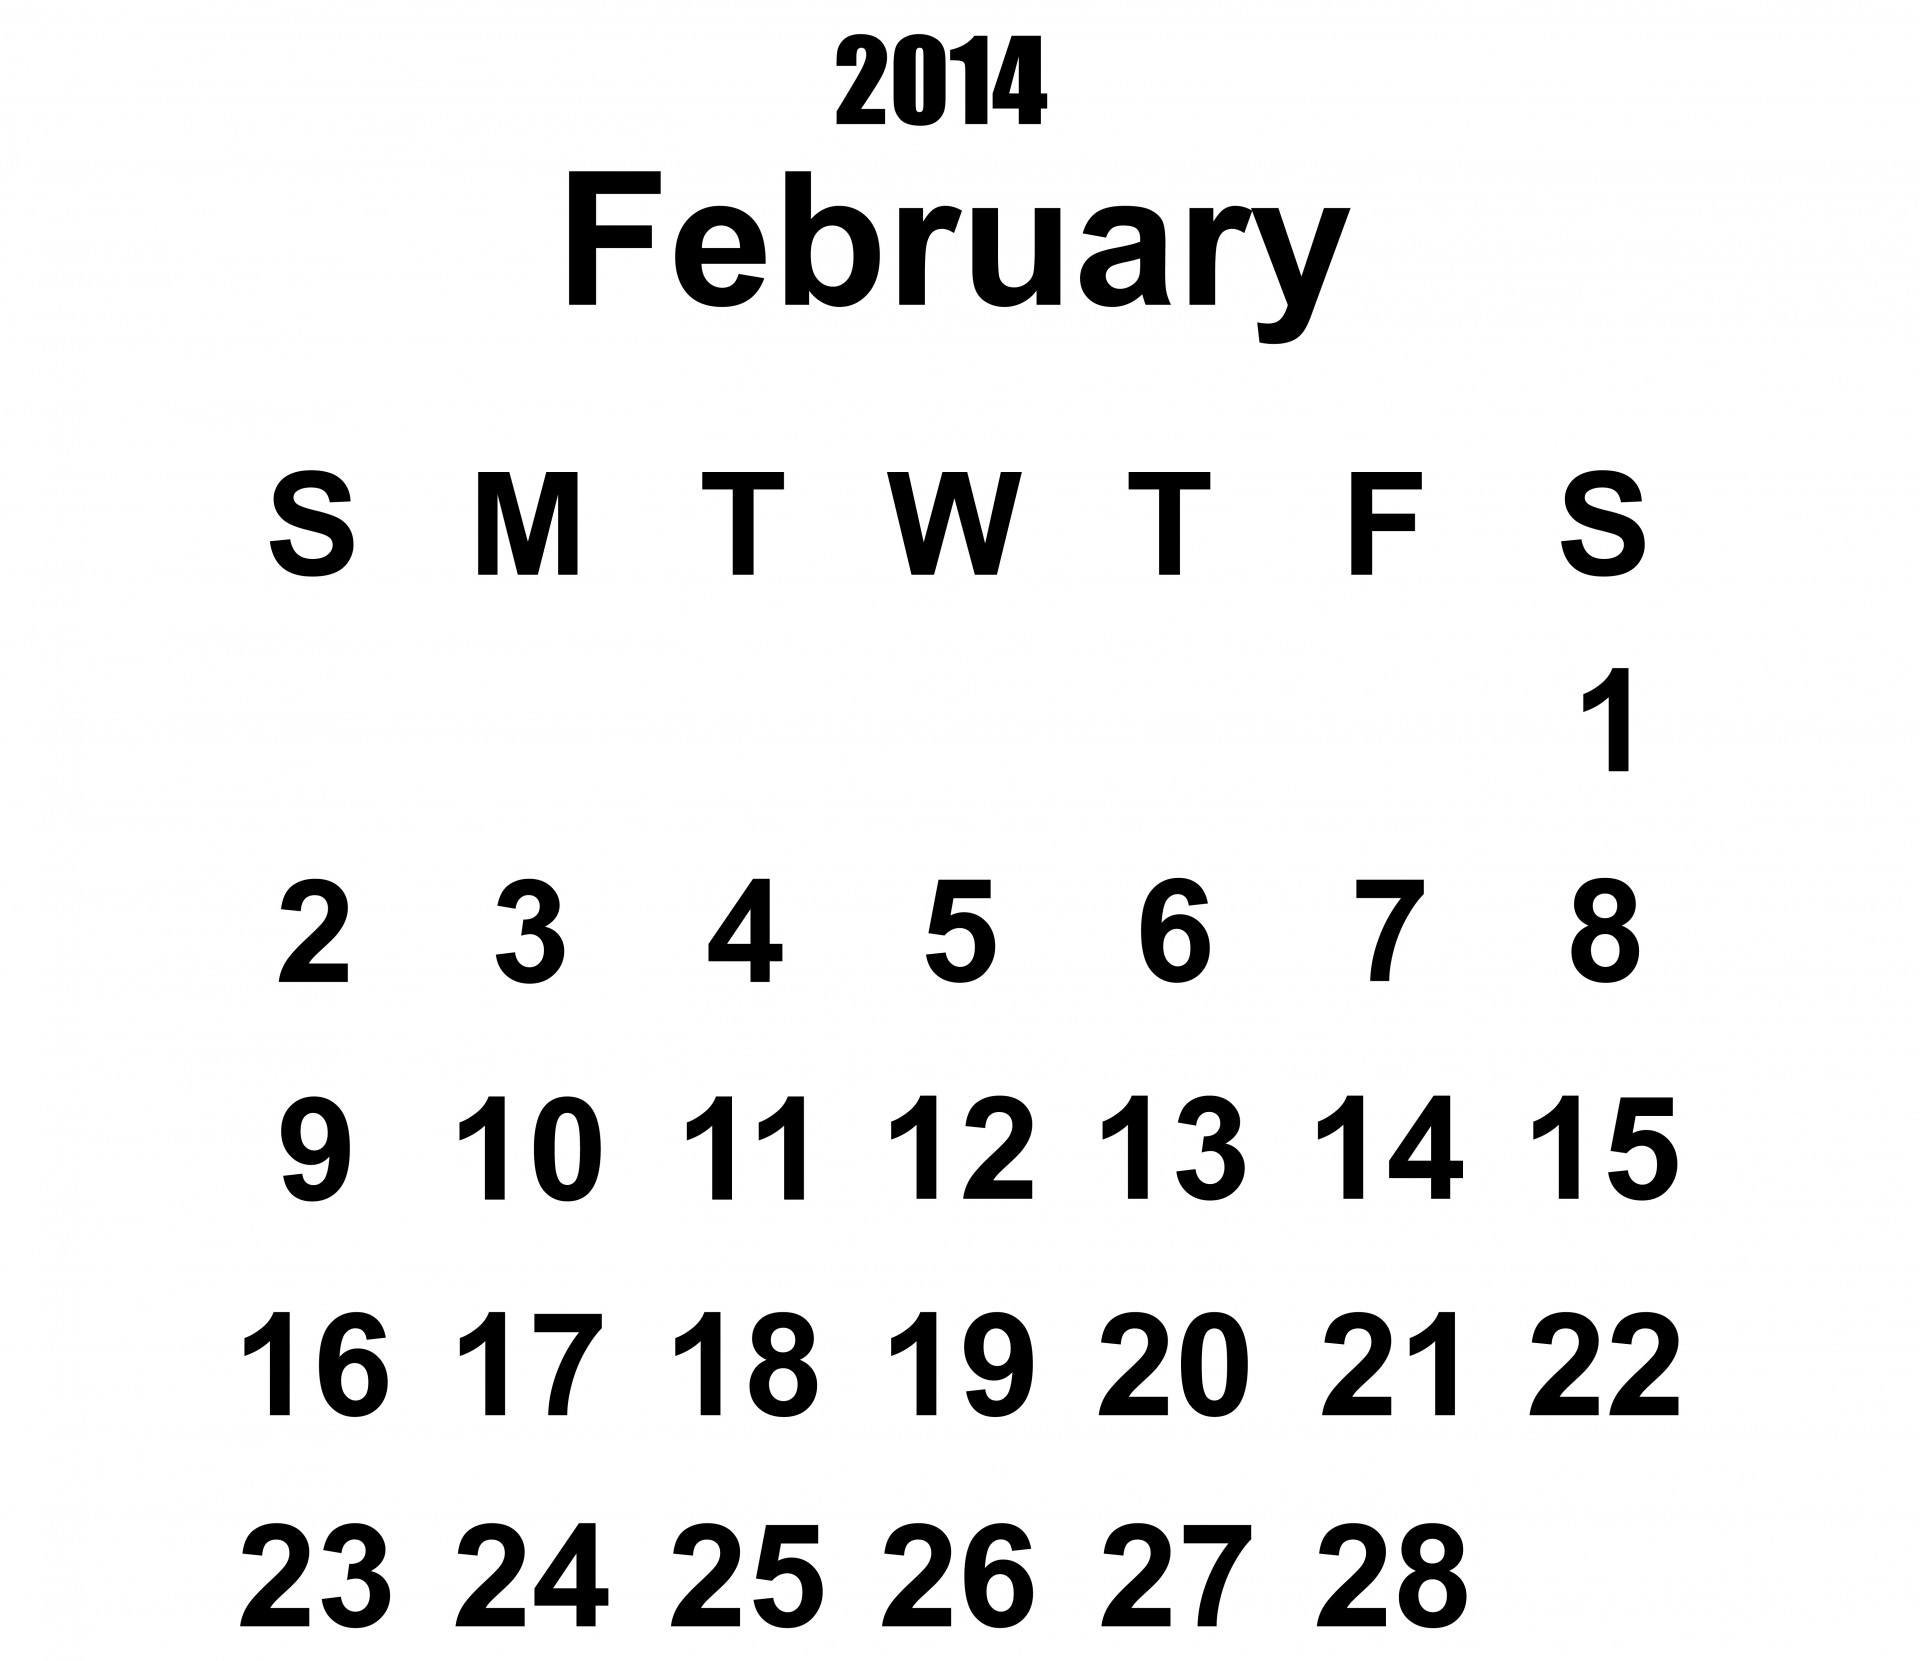 2014 calendar february 2014 calendar 2104 free photo